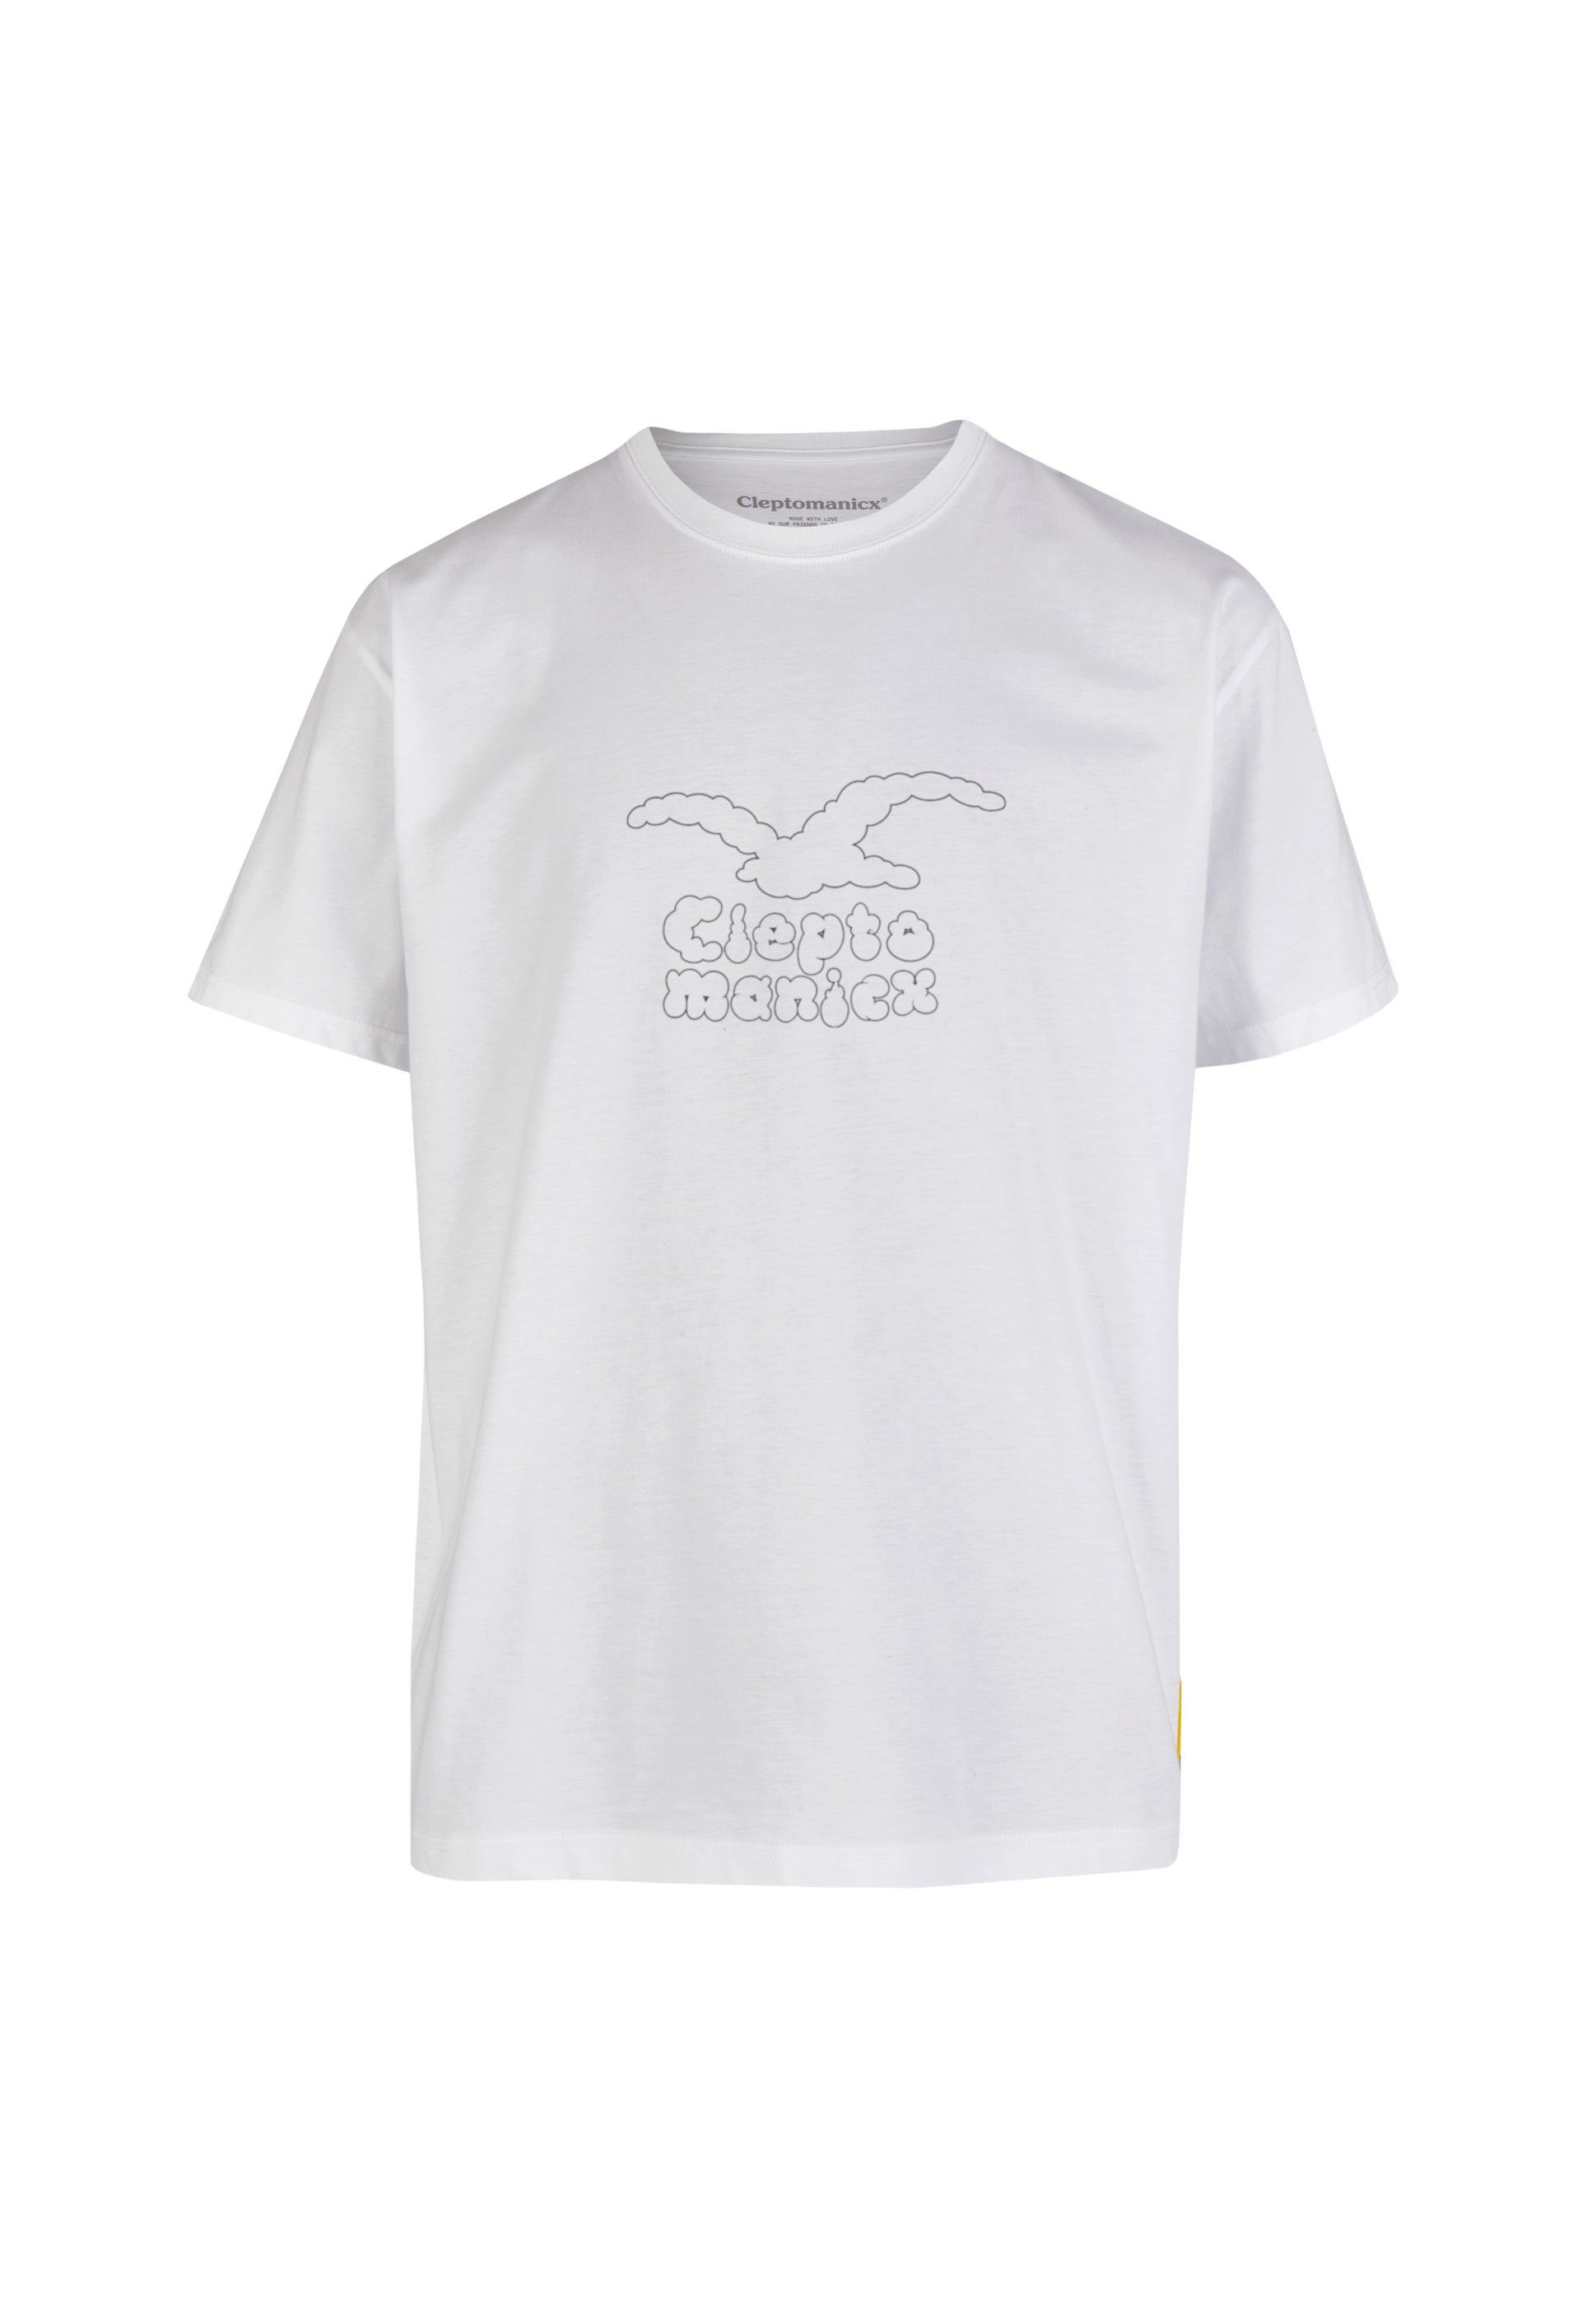 Cleptomanicx T-Shirt Clouds mit lockerem Schnitt weiß